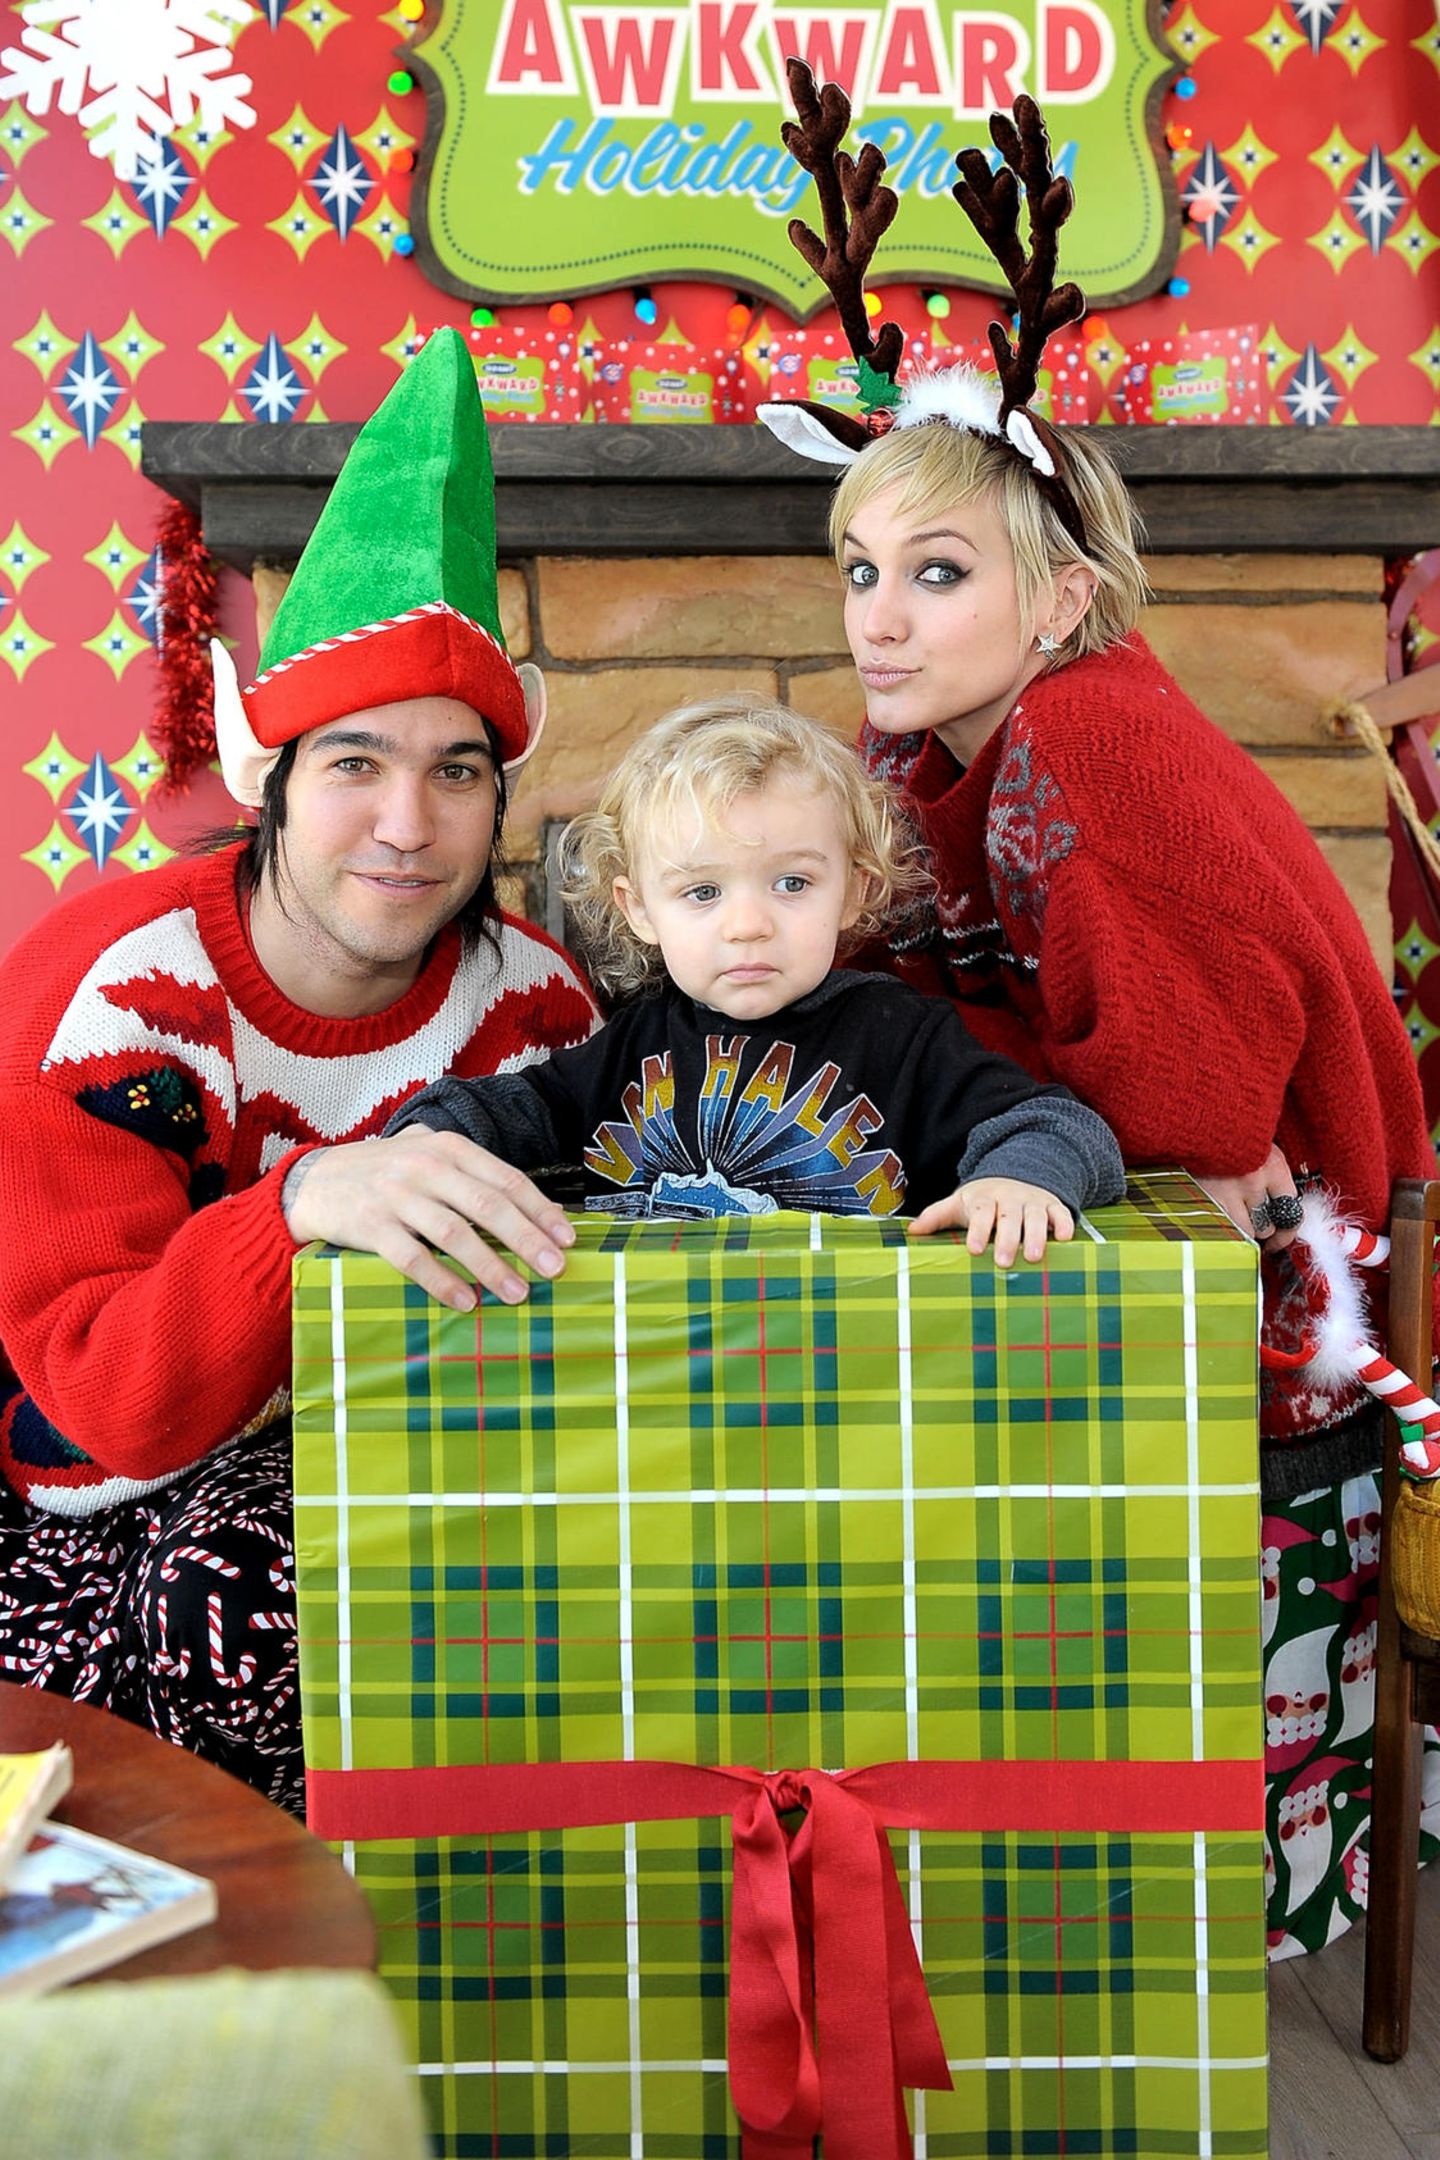 Bronx wird 2008 geboren. Als kleiner Knirps macht er mit seinen Eltern Pete Wentz und Ashley Simpson ein Weihnachtsfoto für das Familienalbum. 